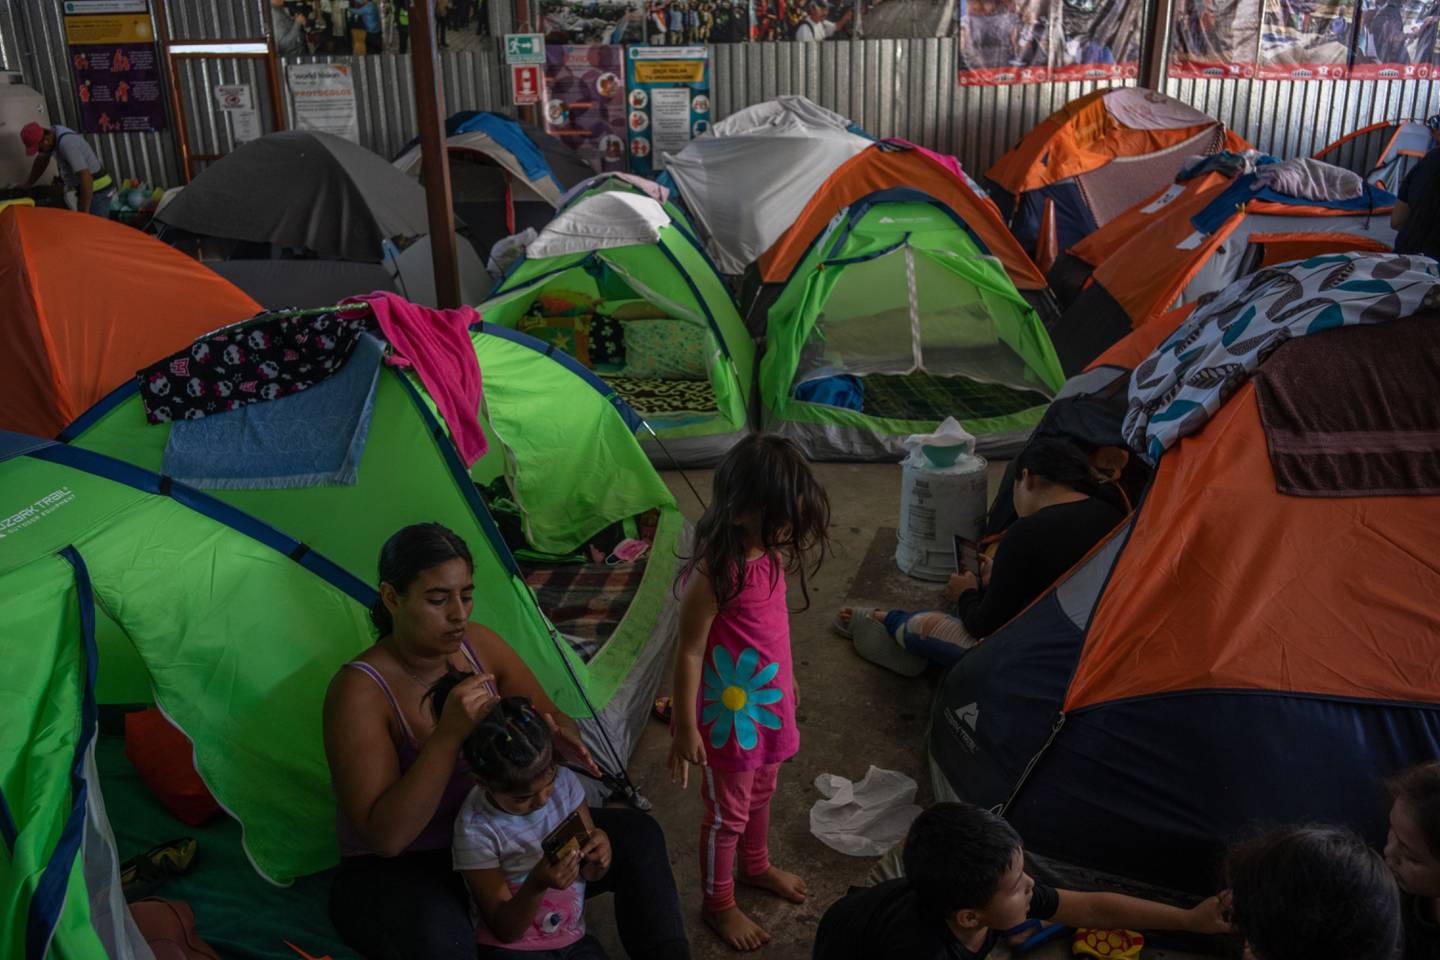 México ha puesto en marcha duros controles migratorios en su frontera sur colindante con Guatemala, en un intento por detener a miles de centroamericanos y haitianos que buscan cruzar al país para llegar a territorio estadounidense.